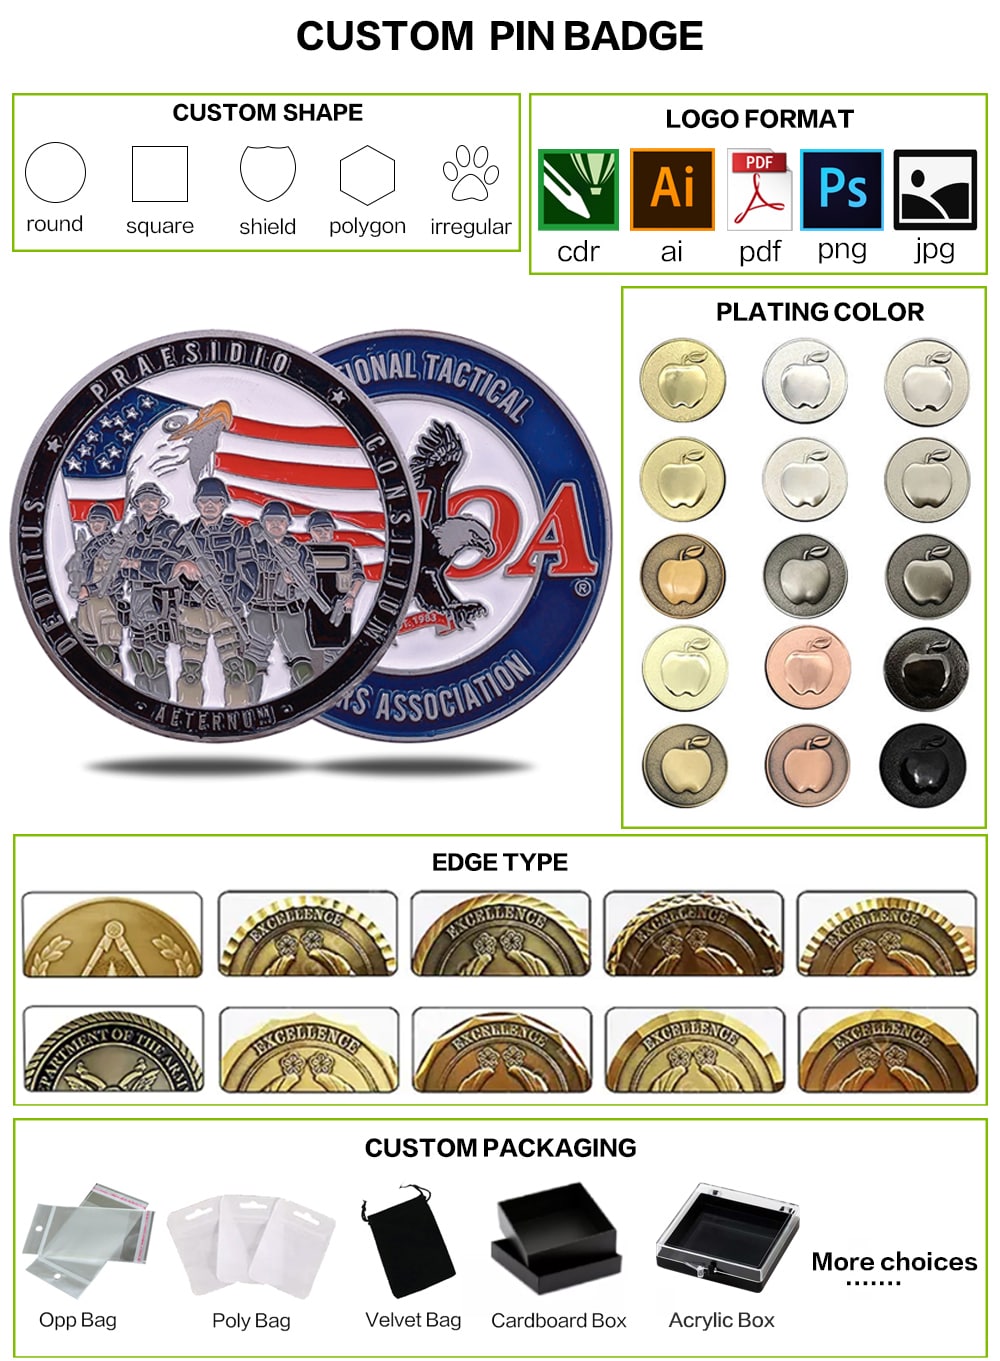 λαμπερά ασημένια αναμνηστικά νομίσματα